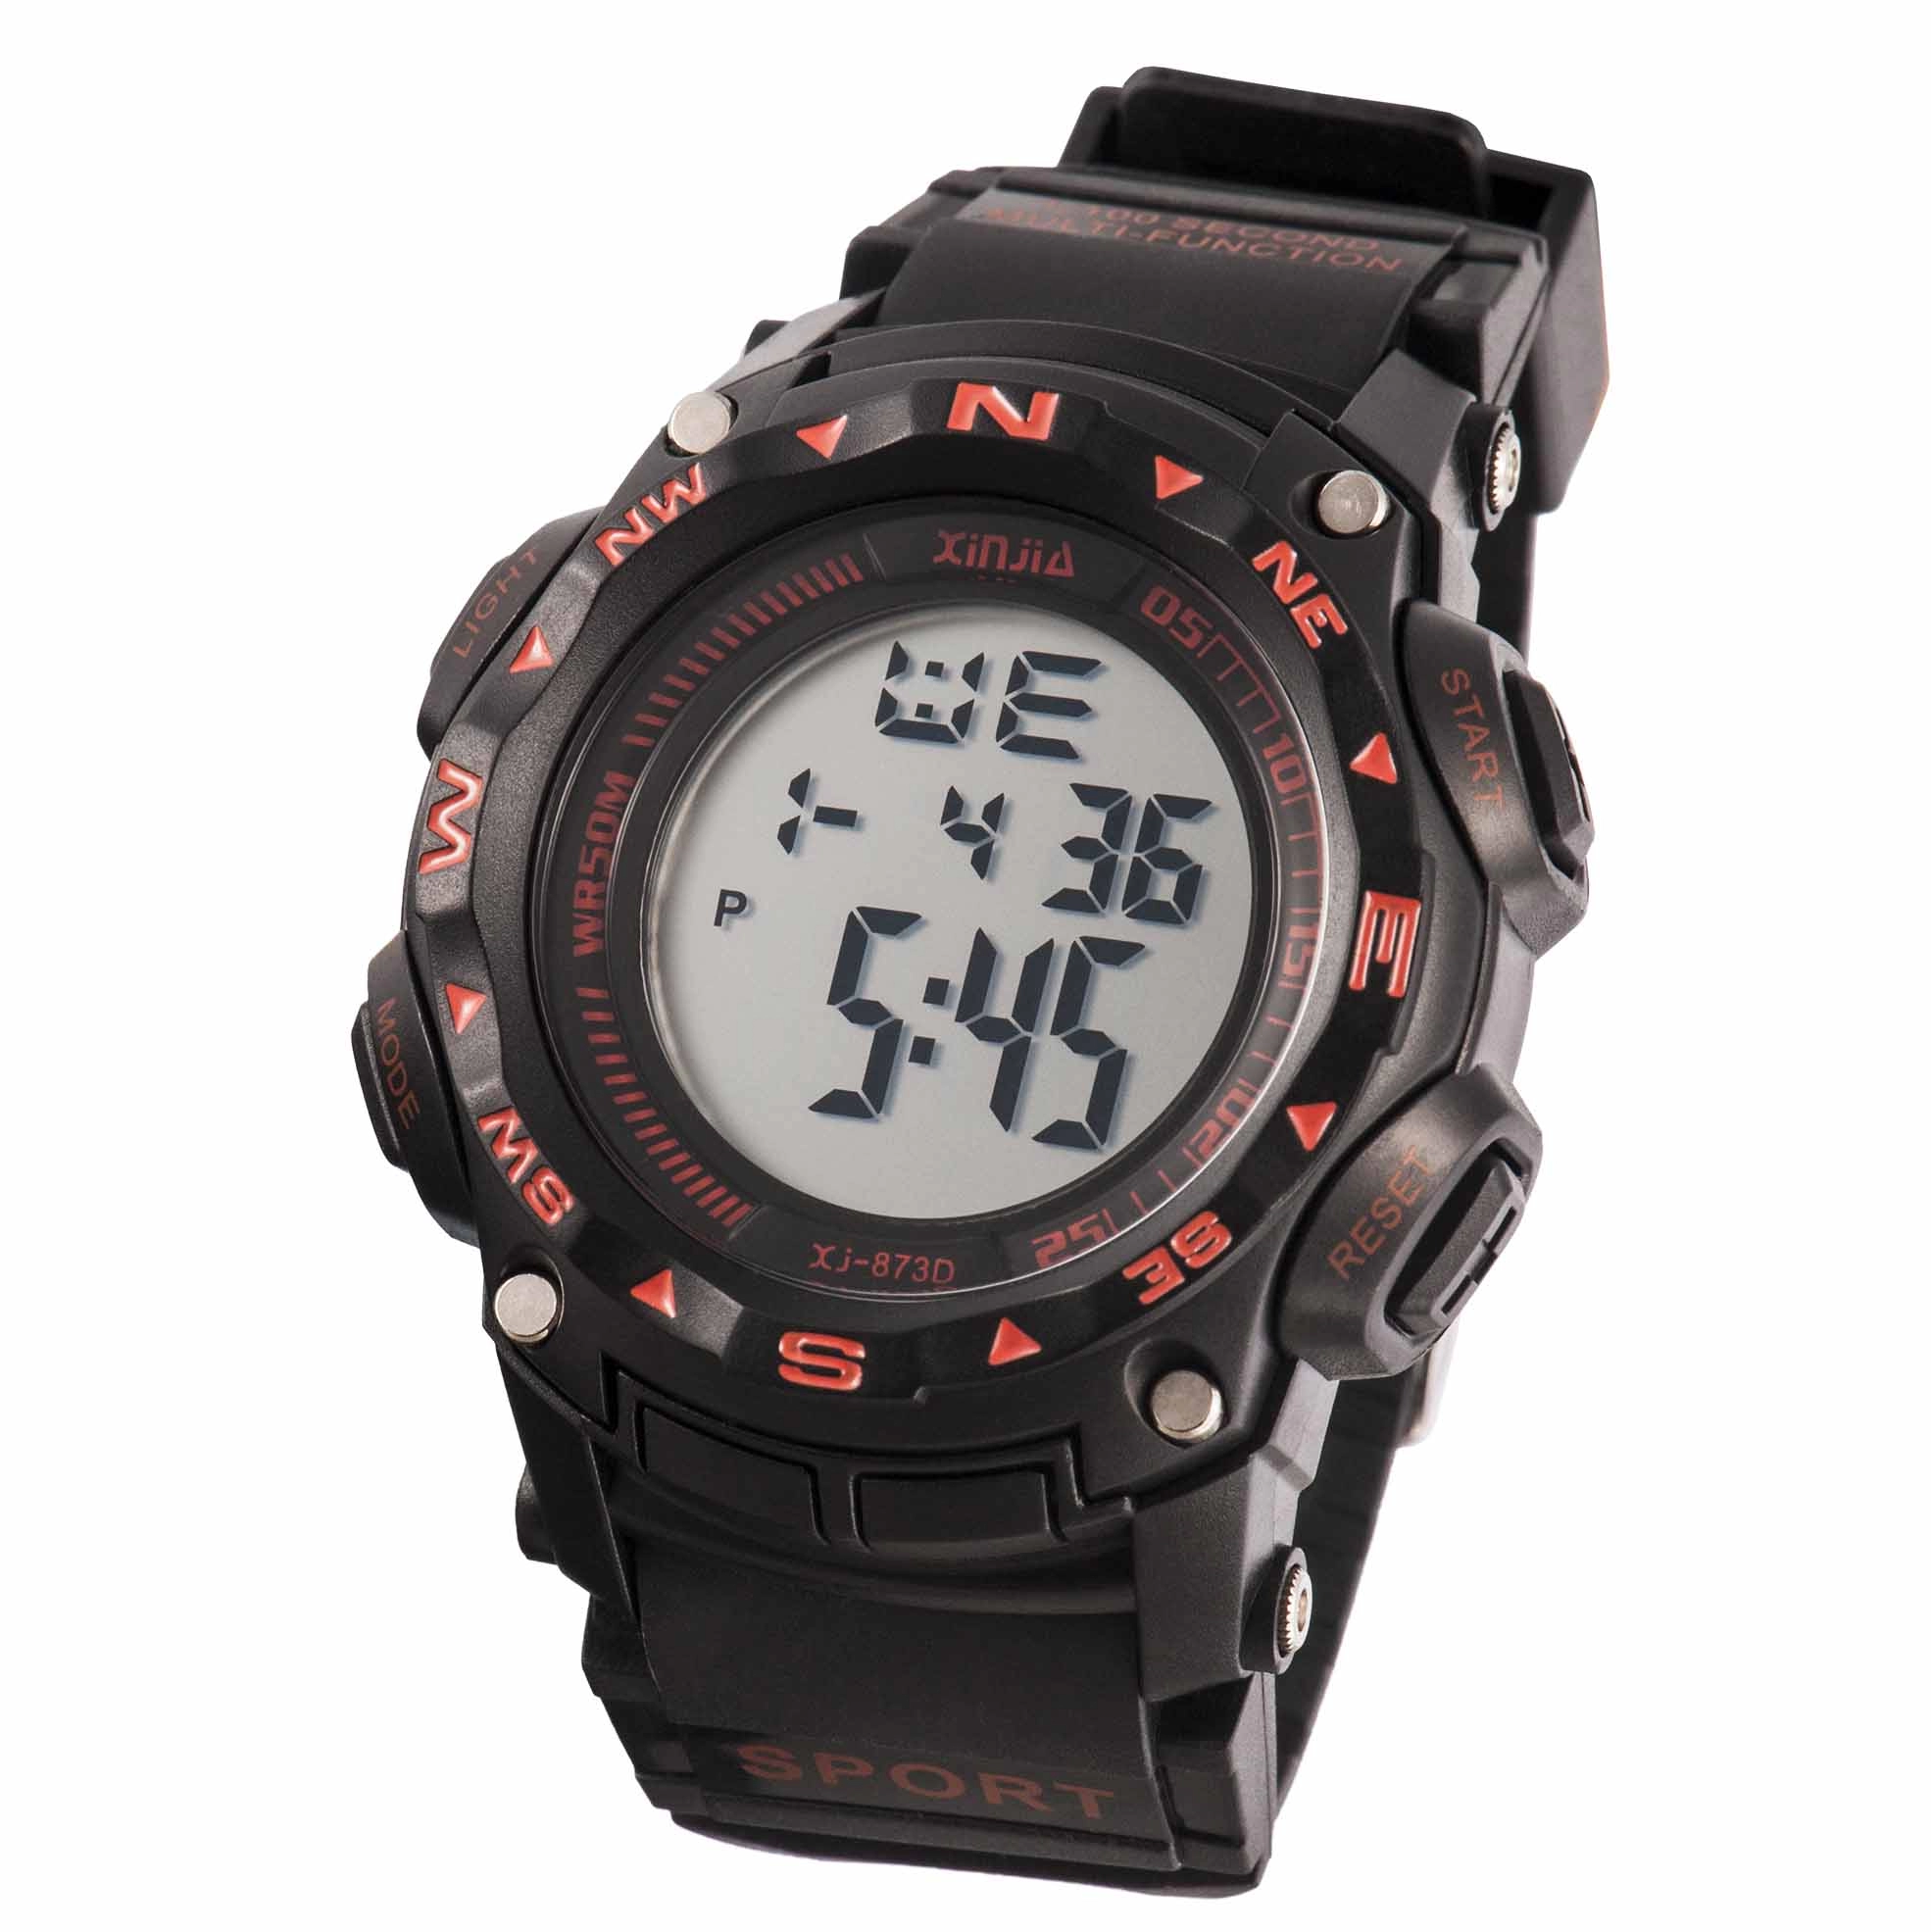 Black Teenagers Waterproof Digital Wrist Watch